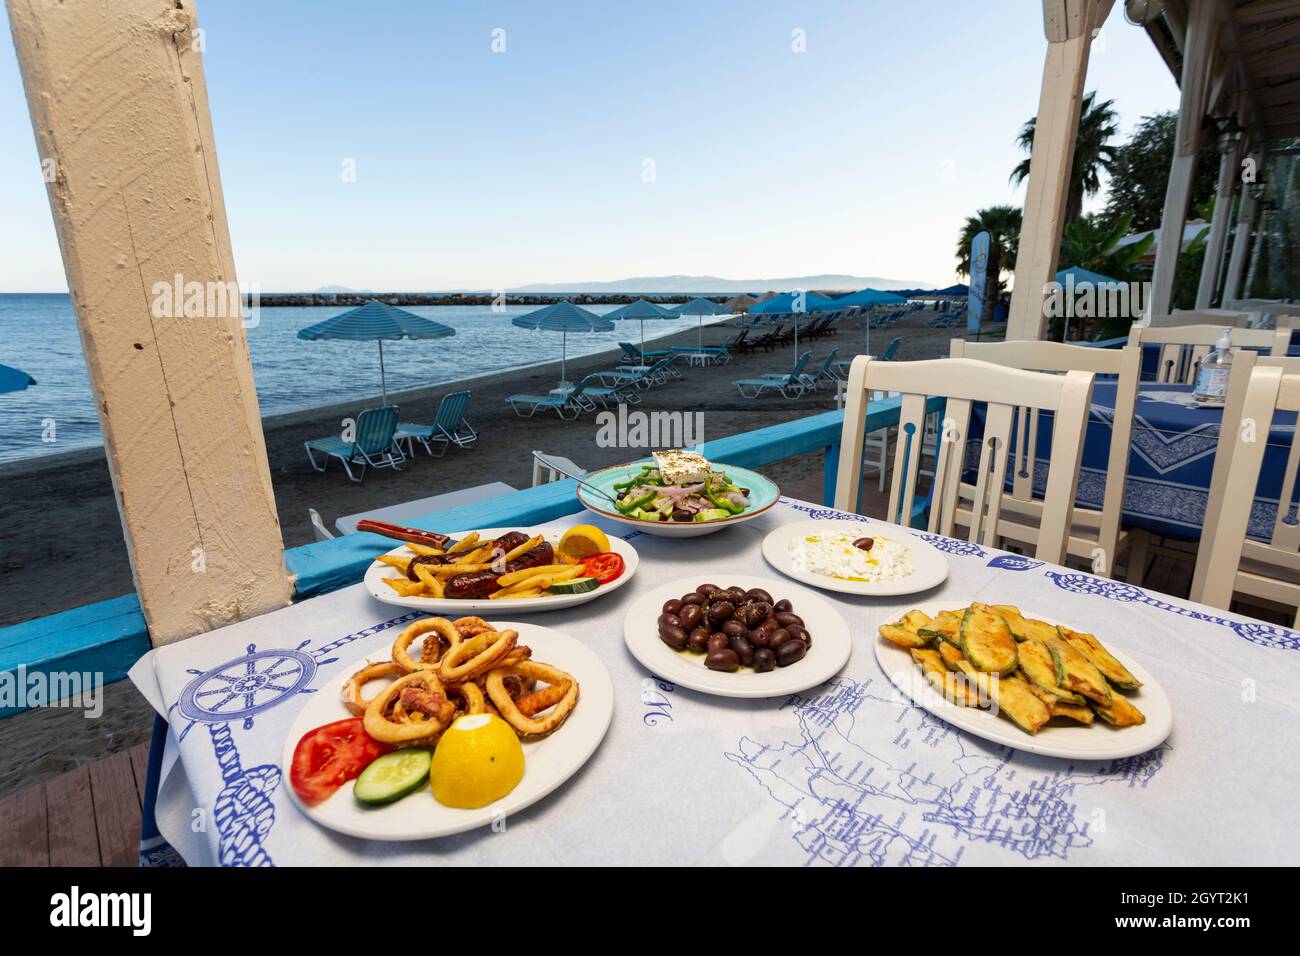 Una variedad de platos tradicionales griegos a la mesa de una taberna frente al mar en Katelios, Kefalonia, Islas Jónicas, Grecia Foto de stock